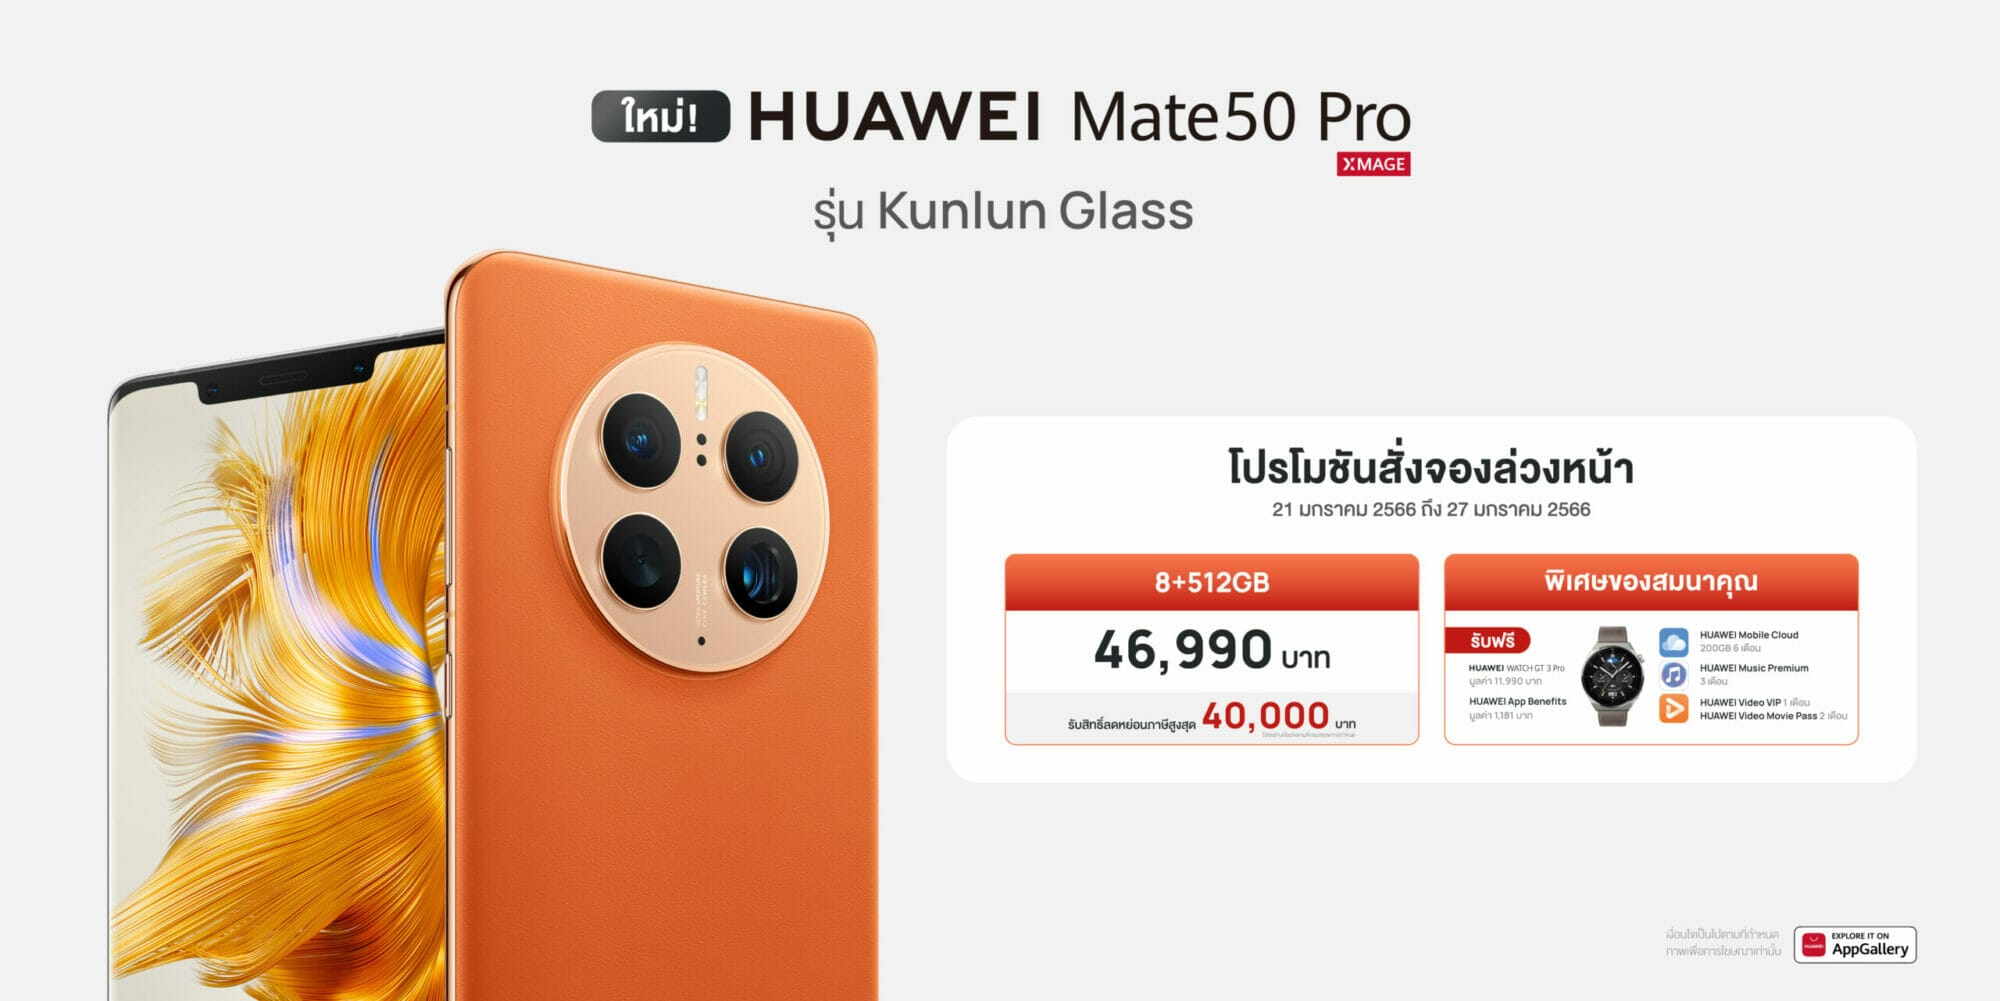 HUAWEI Mate 50 Pro Kunlun Glass สมาร์ทโฟนเรือธงกล้องสวยพร้อมกระจกป้องกันระดับ 5 ดาว ได้รับมาตรฐาน SGS จากสวิสเซอร์แลนด์